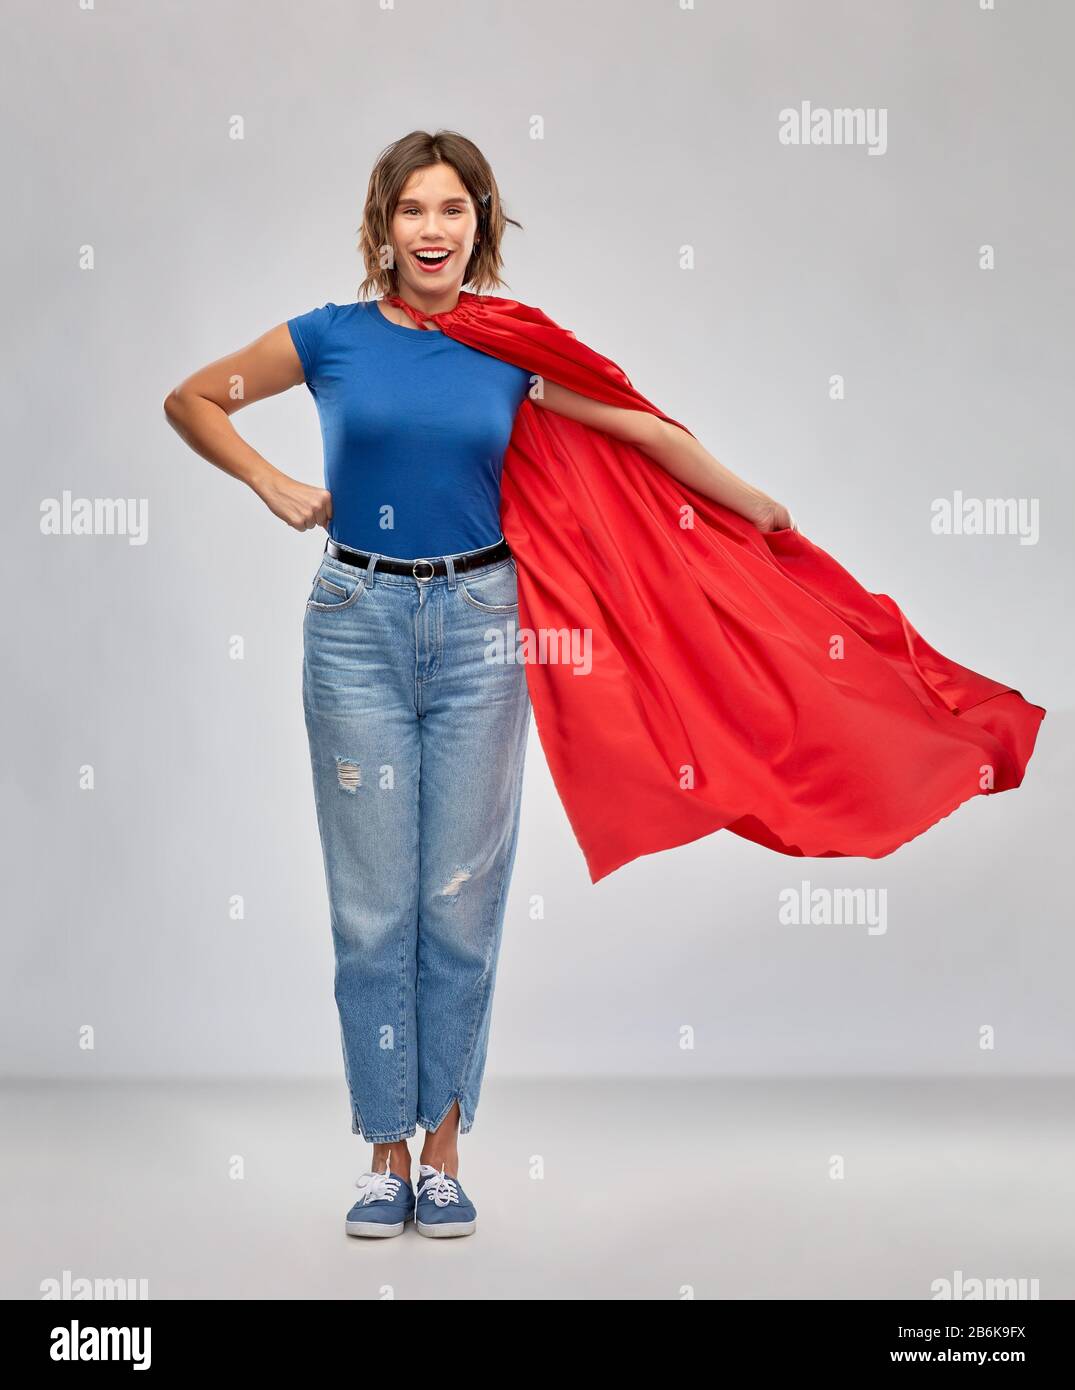 concetto di potere e di gente delle donne - donna felice in capo supereroe rosso su sfondo grigio Foto Stock